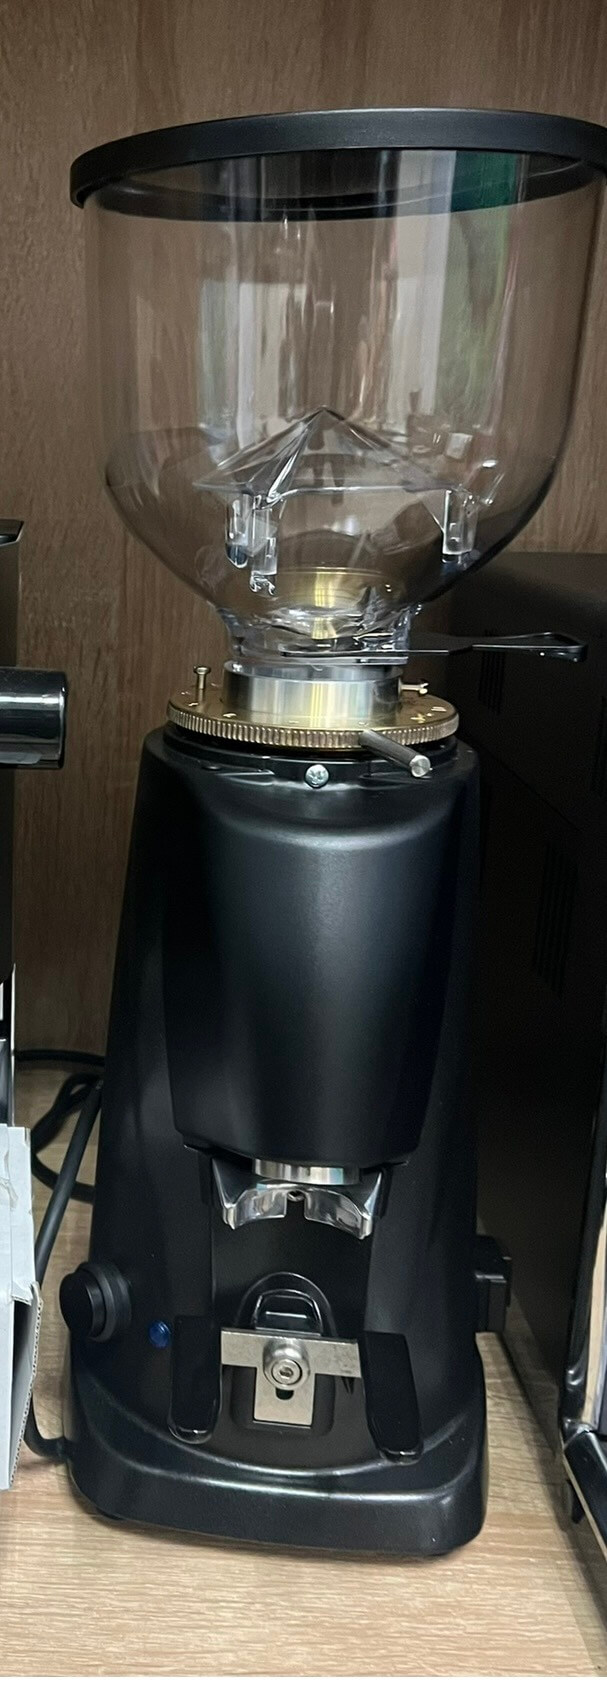 Thanh lý máy xay cà phê Fiorenzato F4 ECO hàng trưng bày